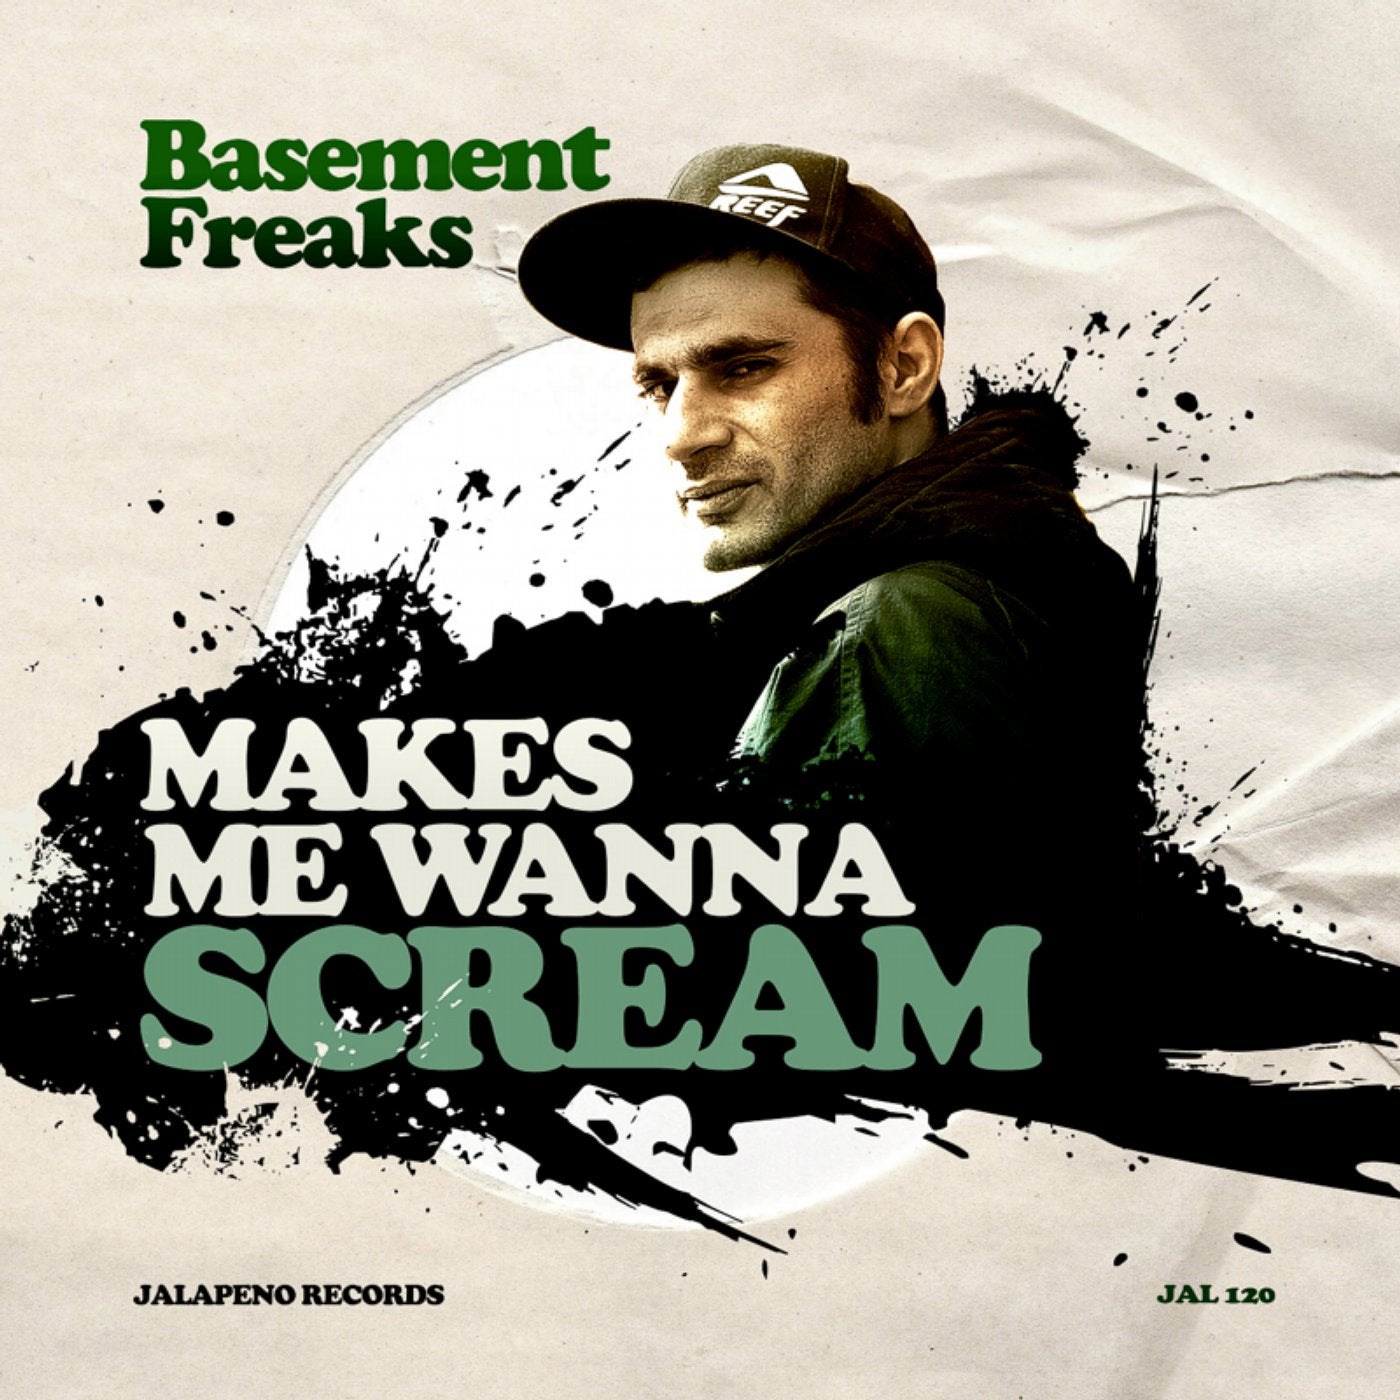 I wanna scream. Basement DJ. Basement Freaks - a Blues thang. Песня Freak с зеленой обложкой. Makes.